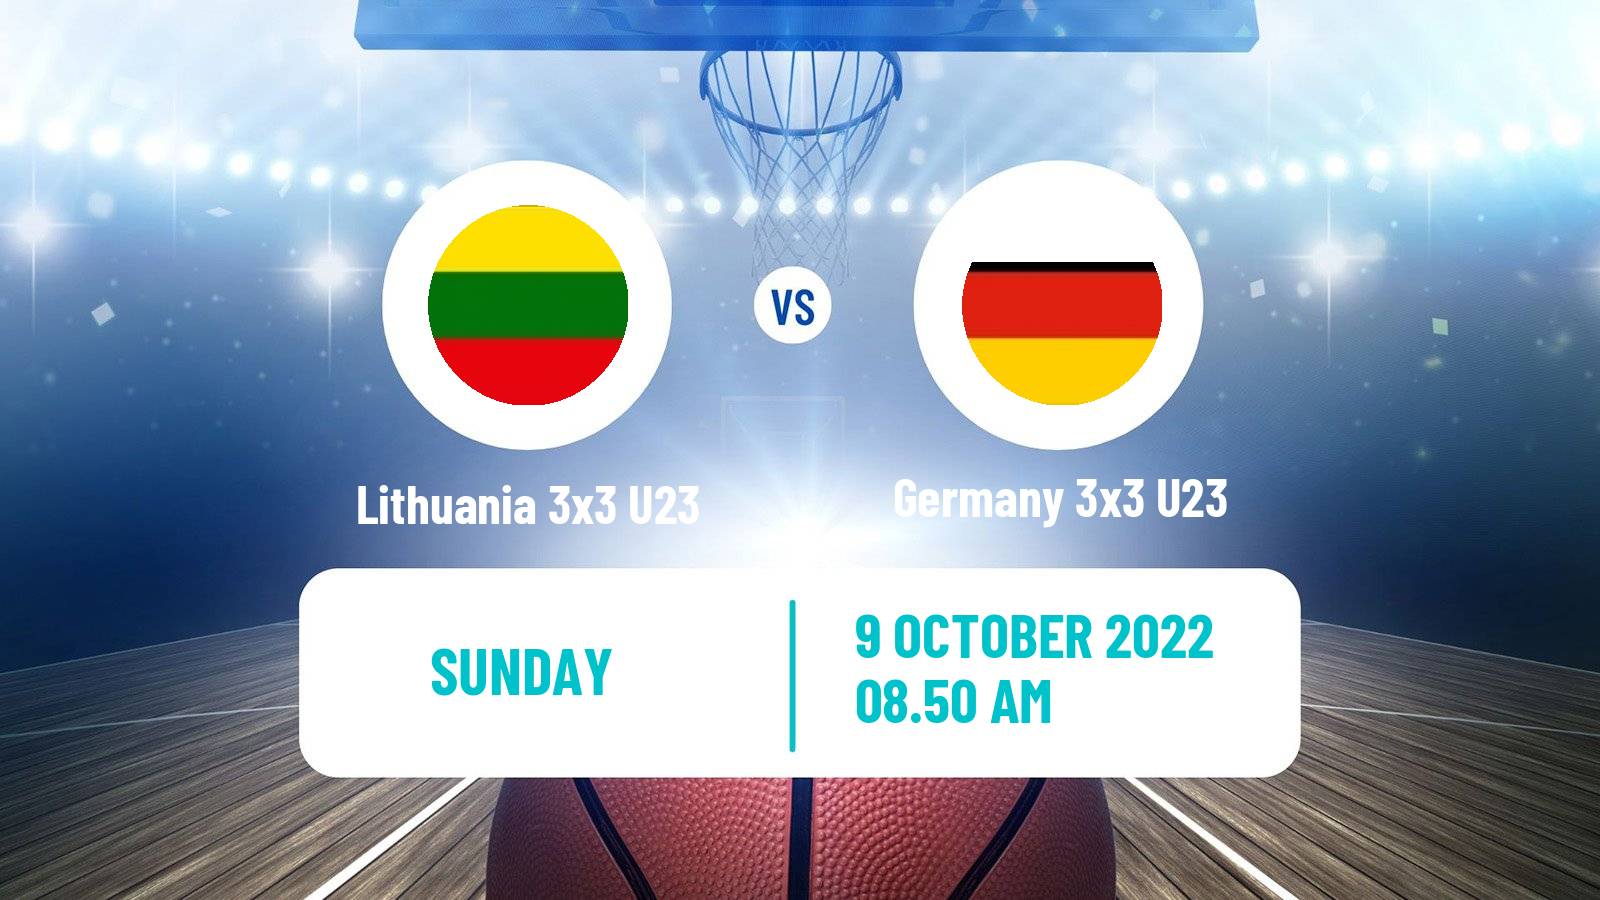 Basketball World Cup Basketball 3x3 U23 Lithuania 3x3 U23 - Germany 3x3 U23